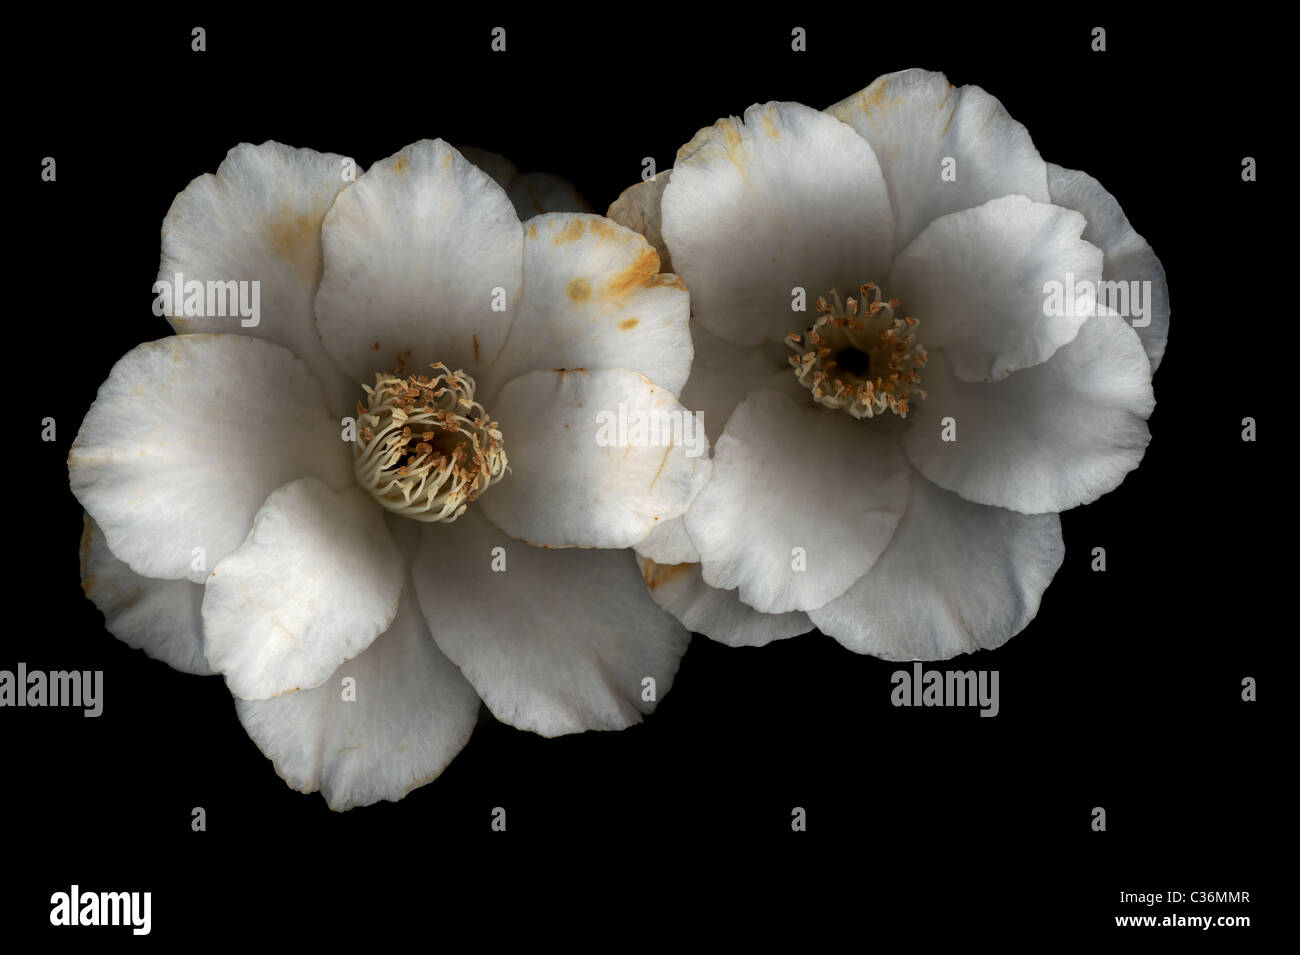 White Camellias on dark background Stock Photo